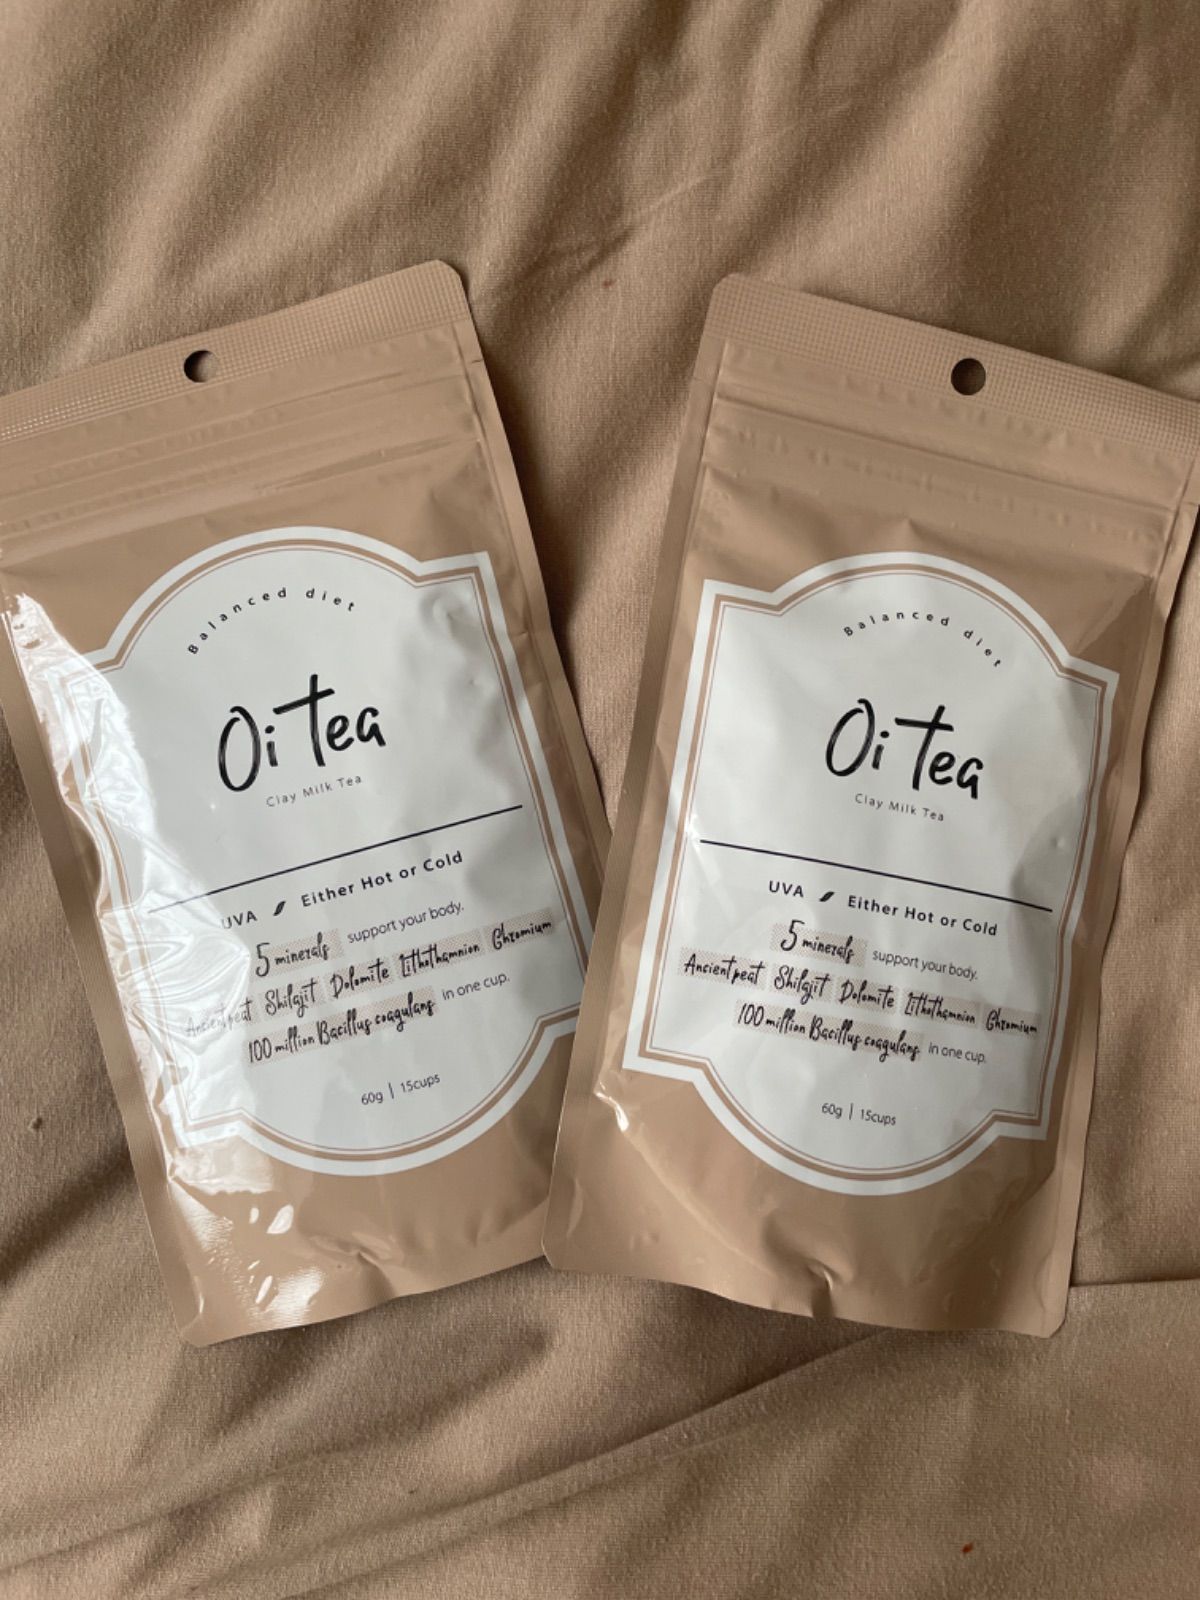 Oi tea クレイミルクティー 60g - ダイエット食品